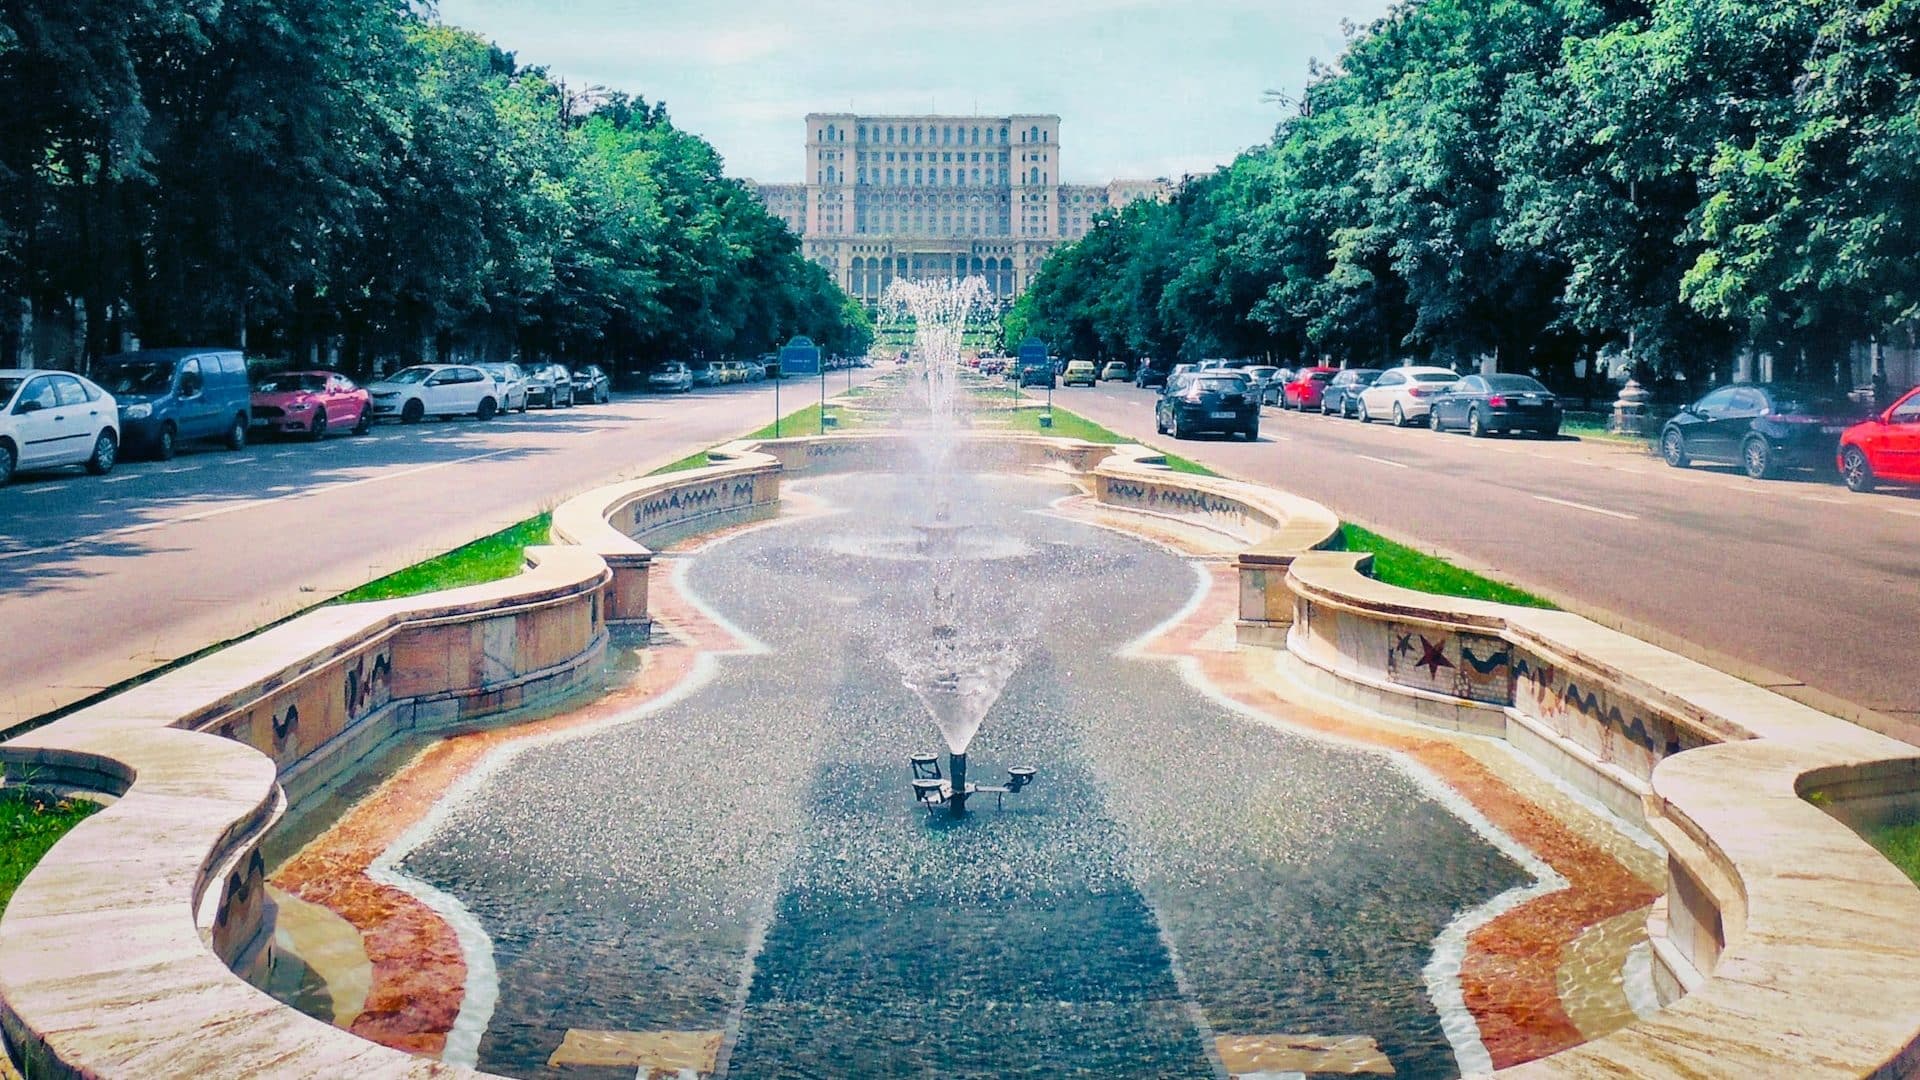 Situats al cor de la ciutat, el bulevard Unirii i la zona de l'edifici del Parlament es troben entre els millors llocs de Bucarest per als turistes.